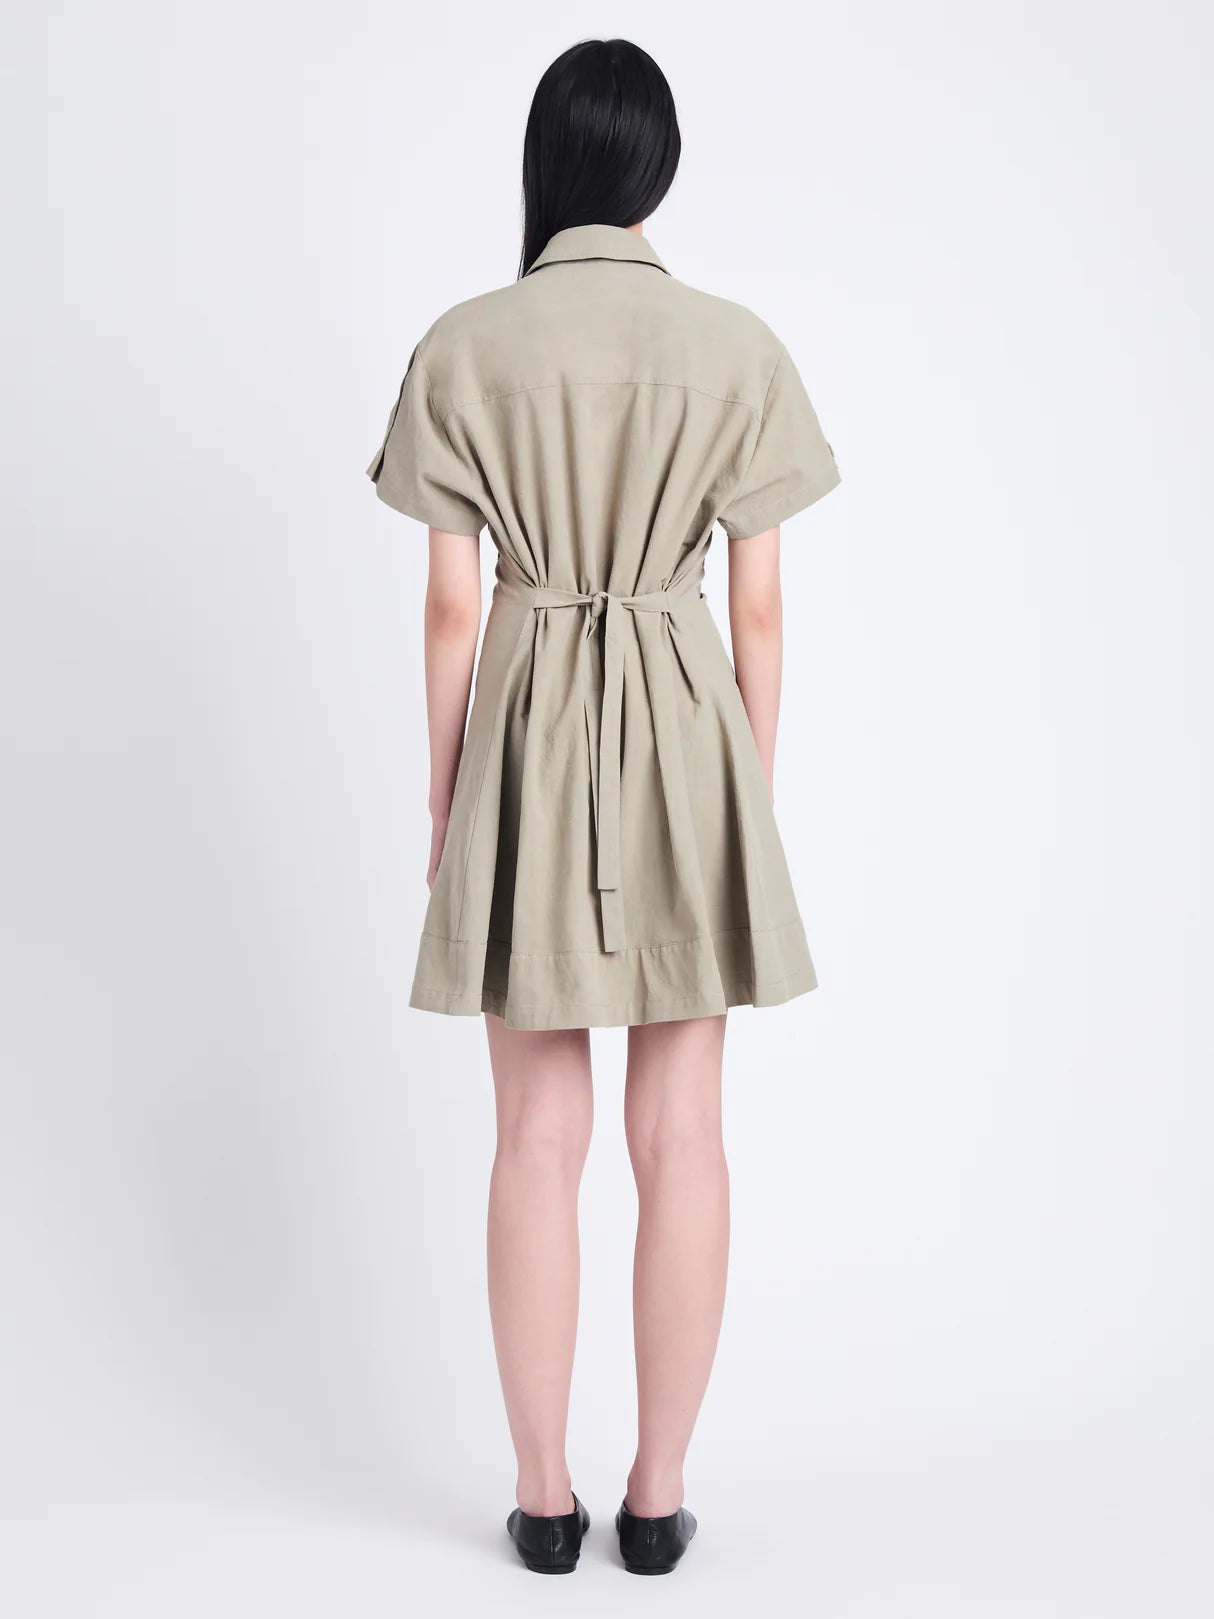 Carmine Dress in Solid Crinkle Cotton - Bayleaf